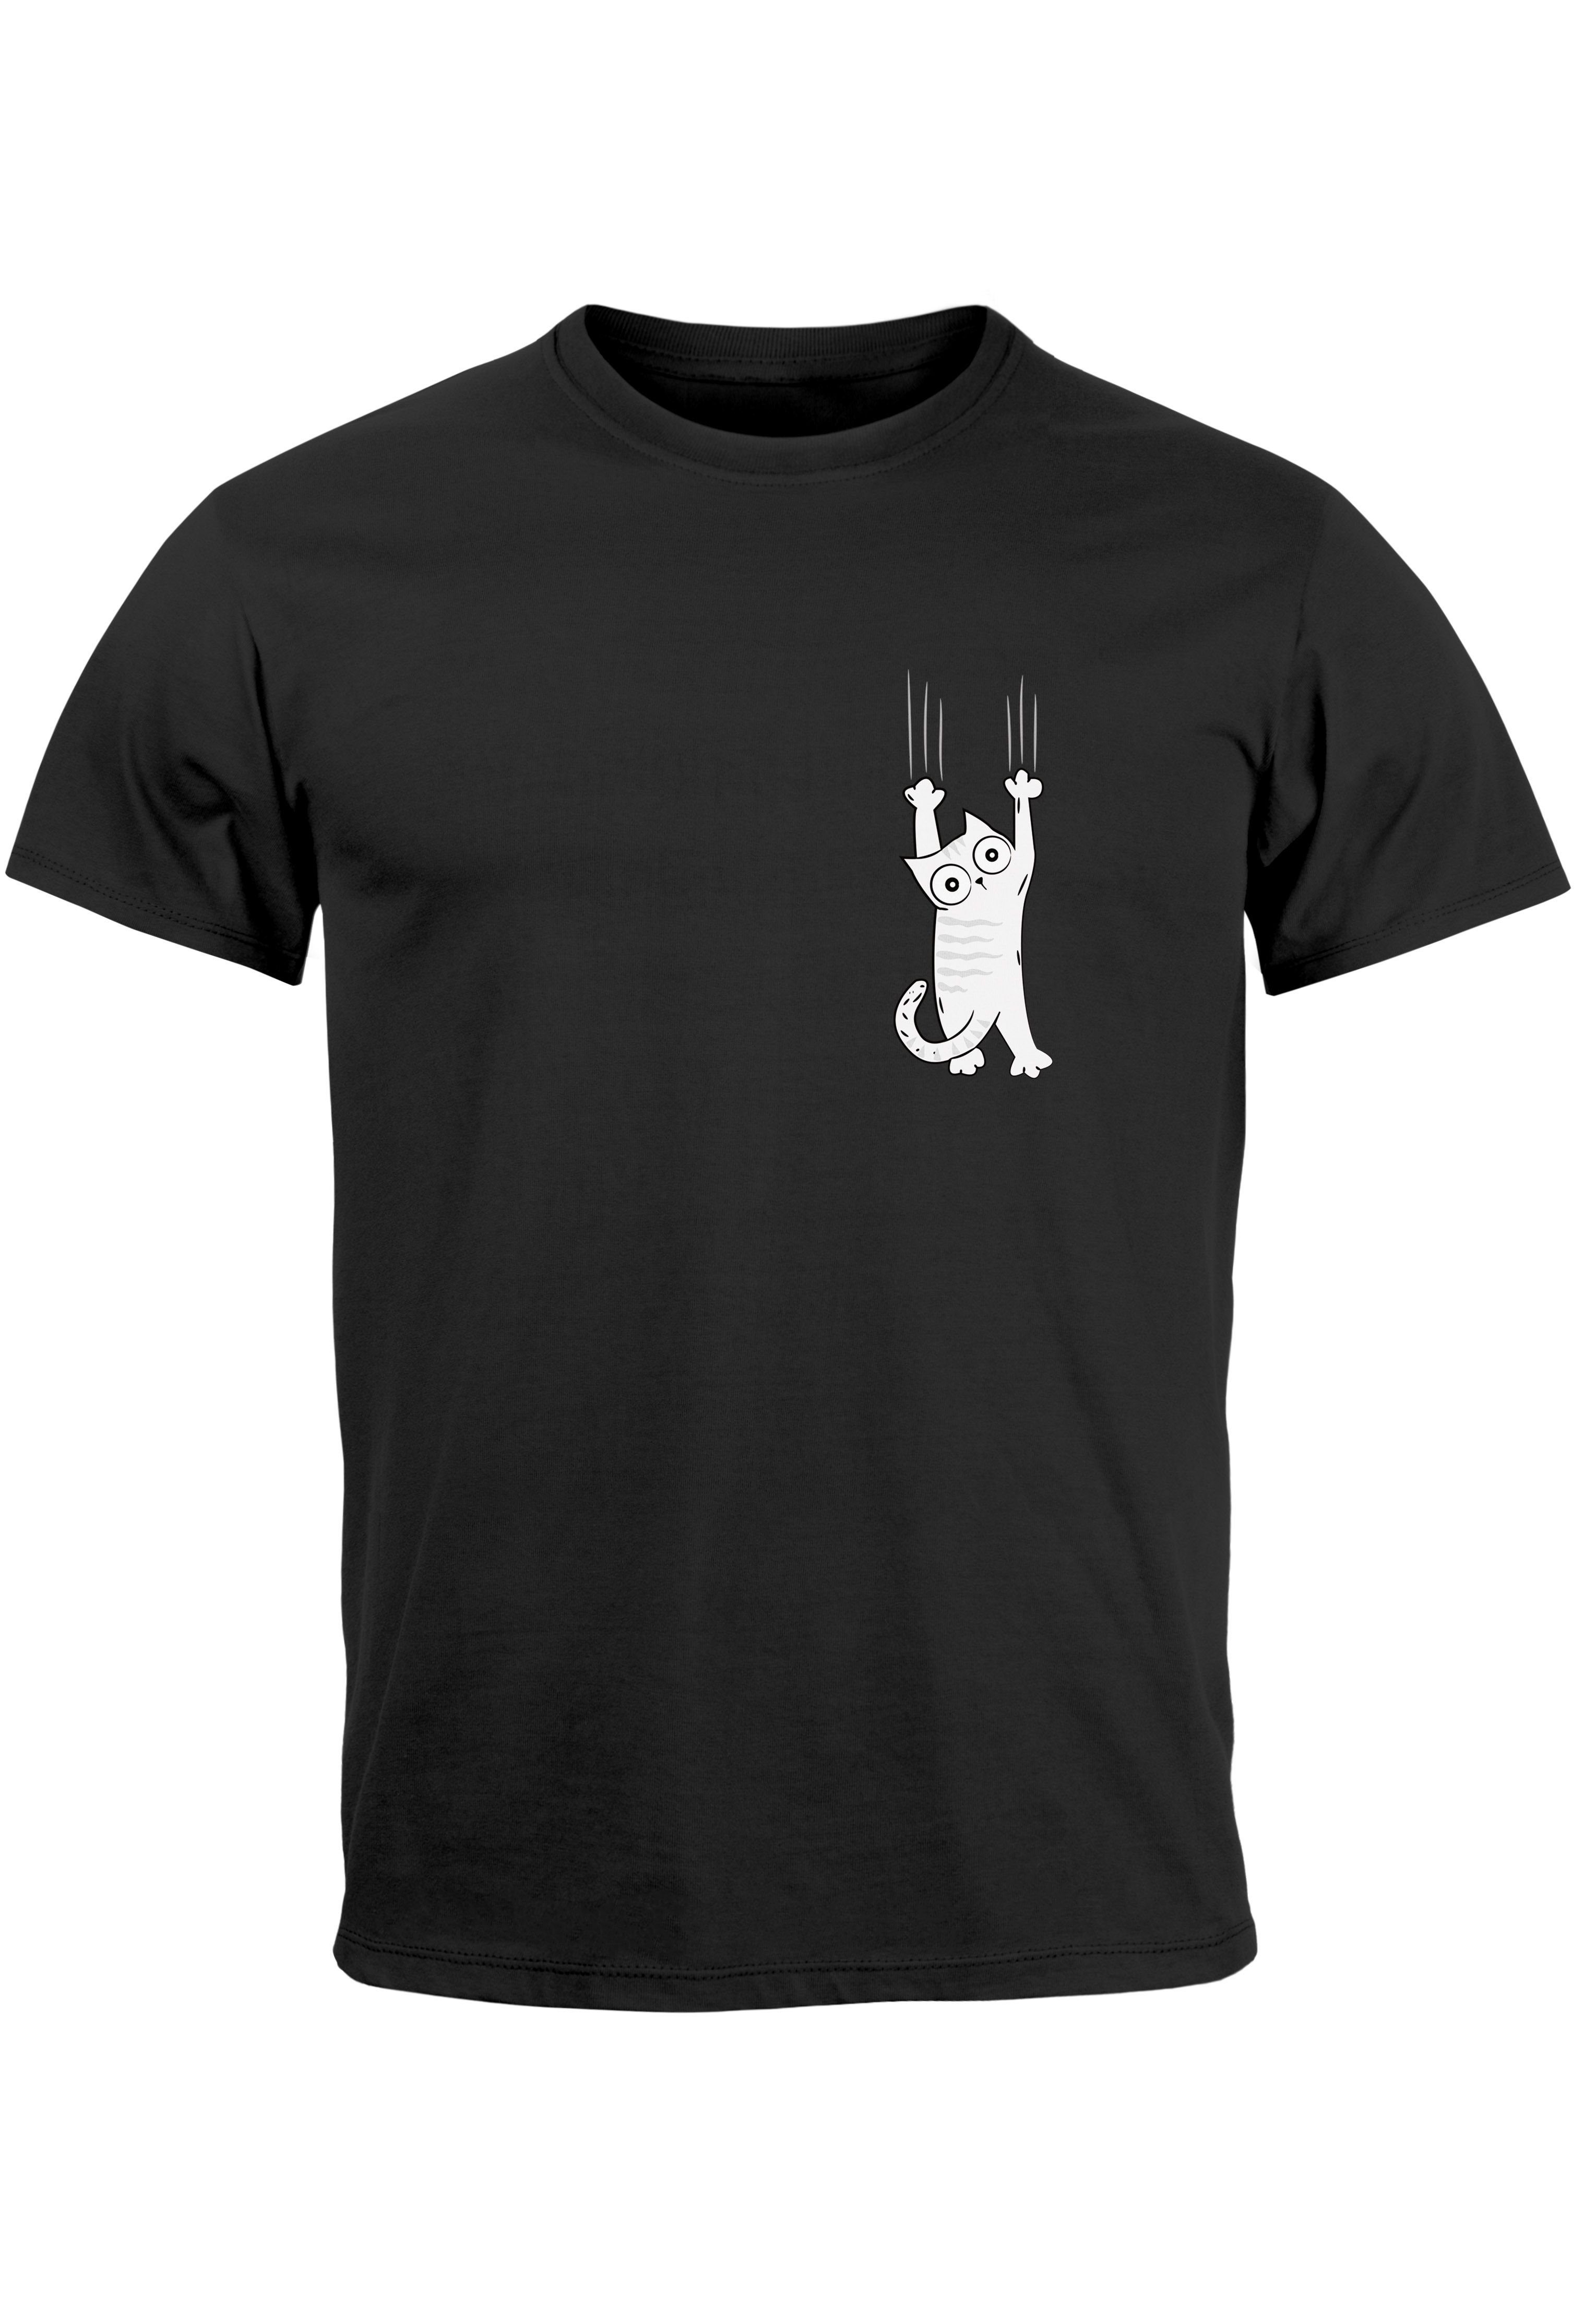 Neverless Print-Shirt schwarz Kapuzen-Pullover Print Männer Logo Cat T-Shirt Herren mit Aufdruck Katze lustig